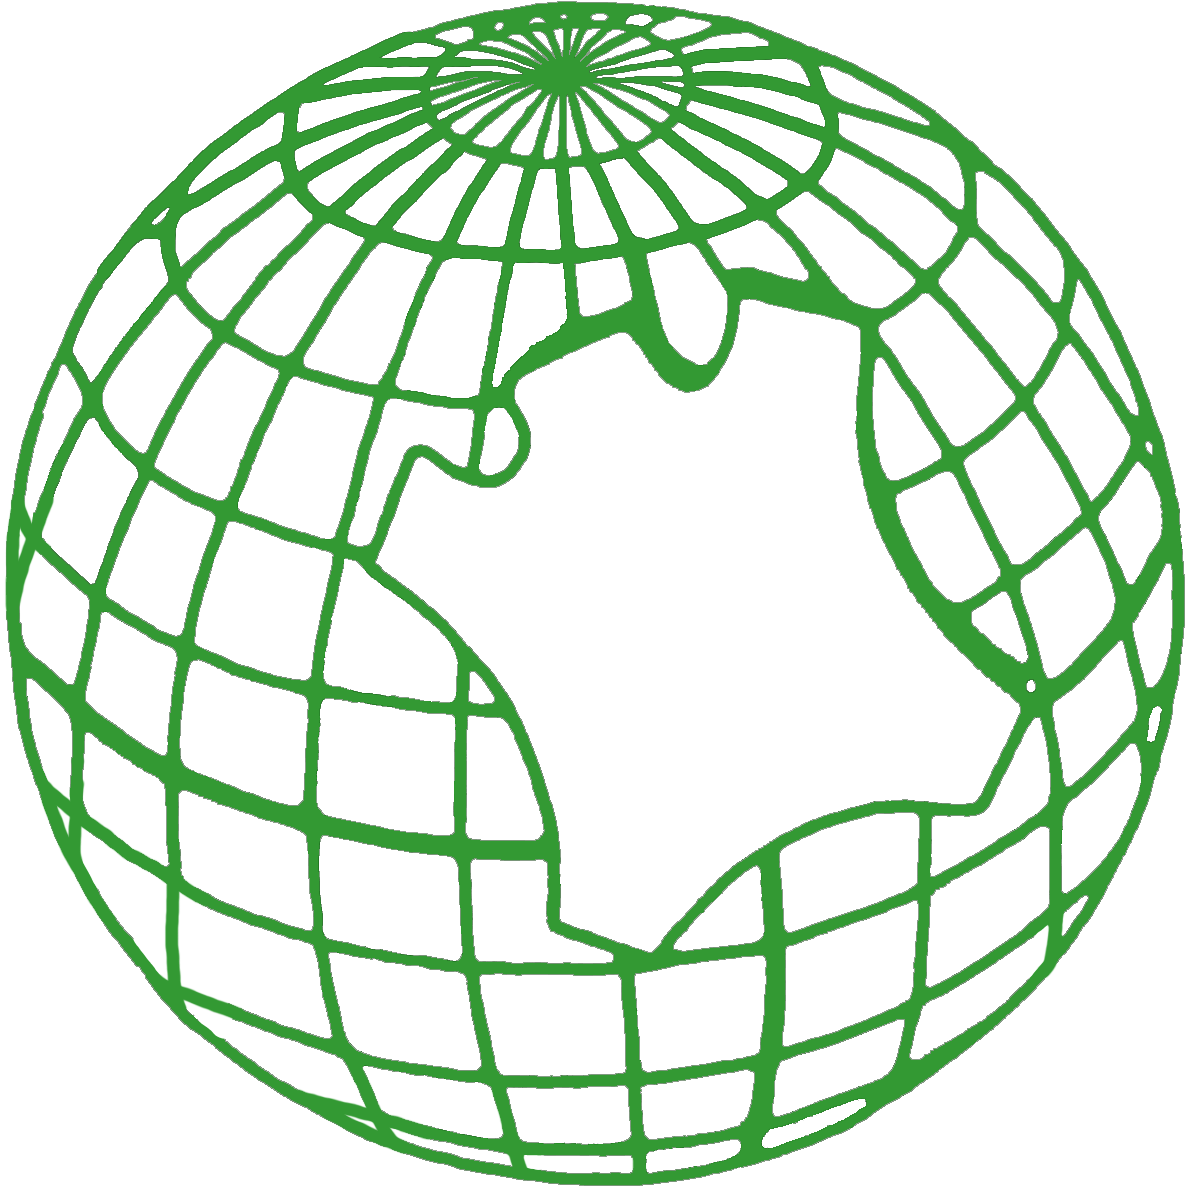 Primary Logo (Image)